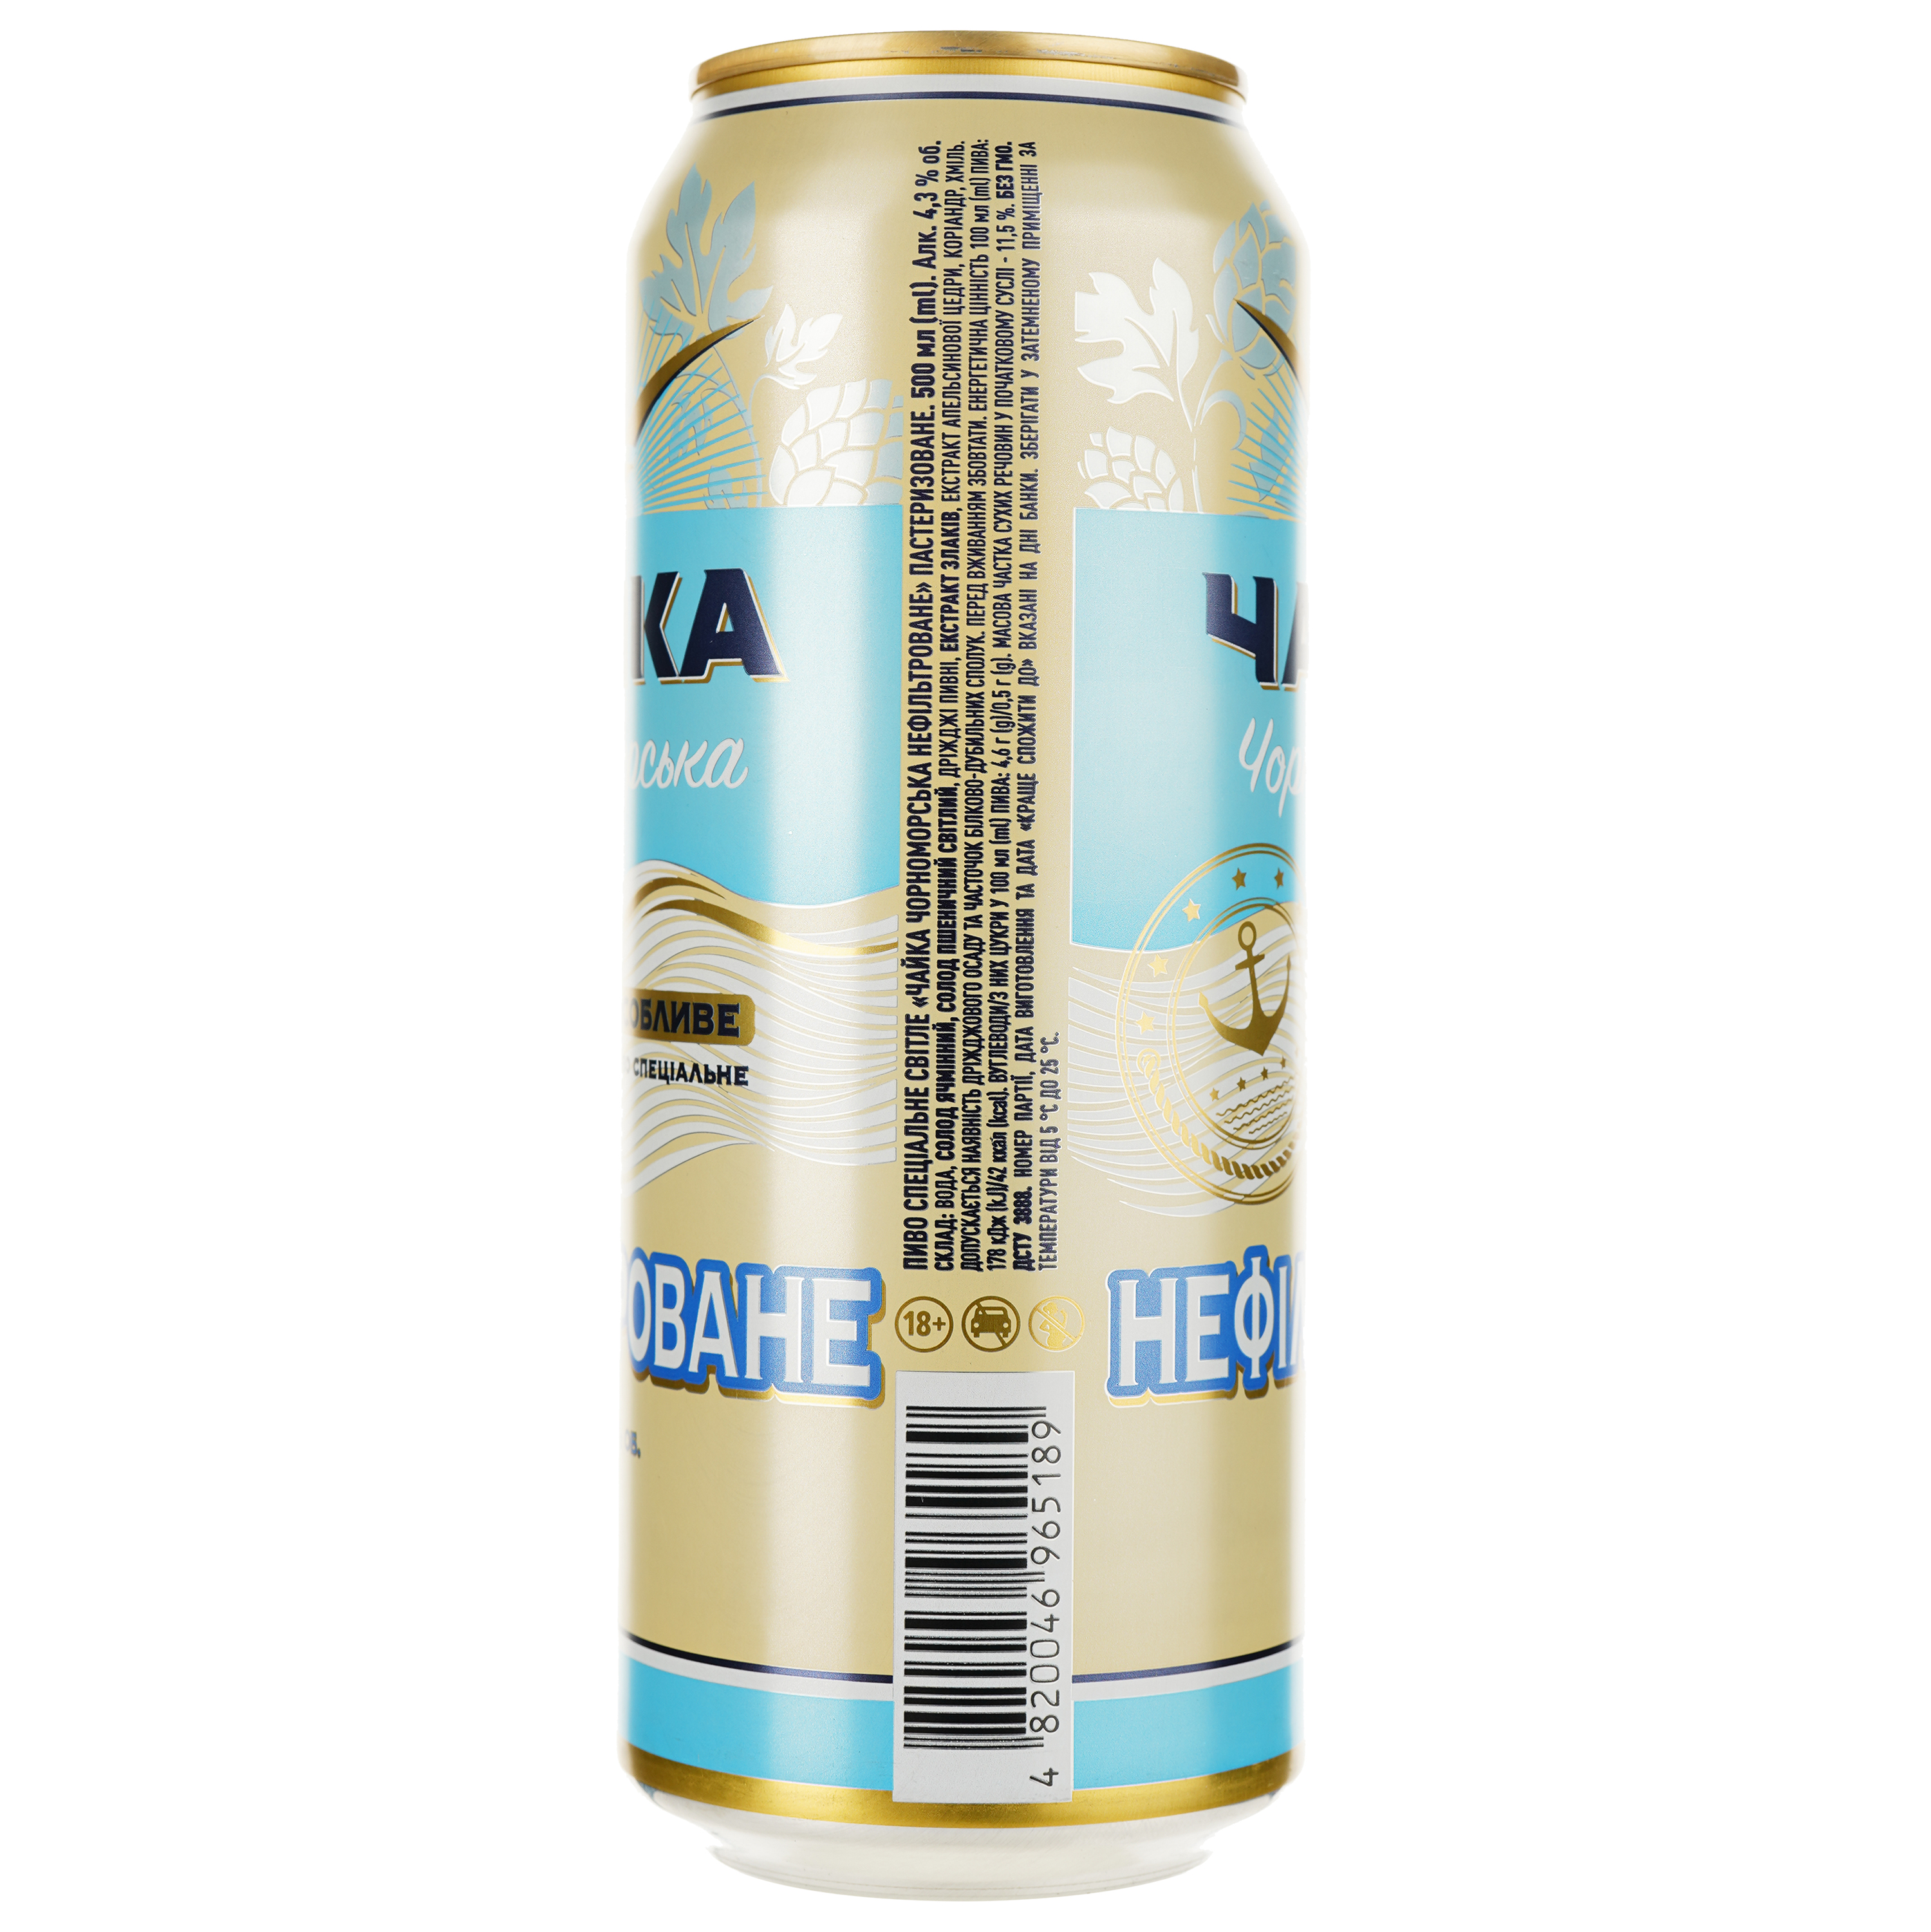 Пиво Чайка Чорноморська Особливе, светлое, 4,3%, ж/б, 0,5 л - фото 2